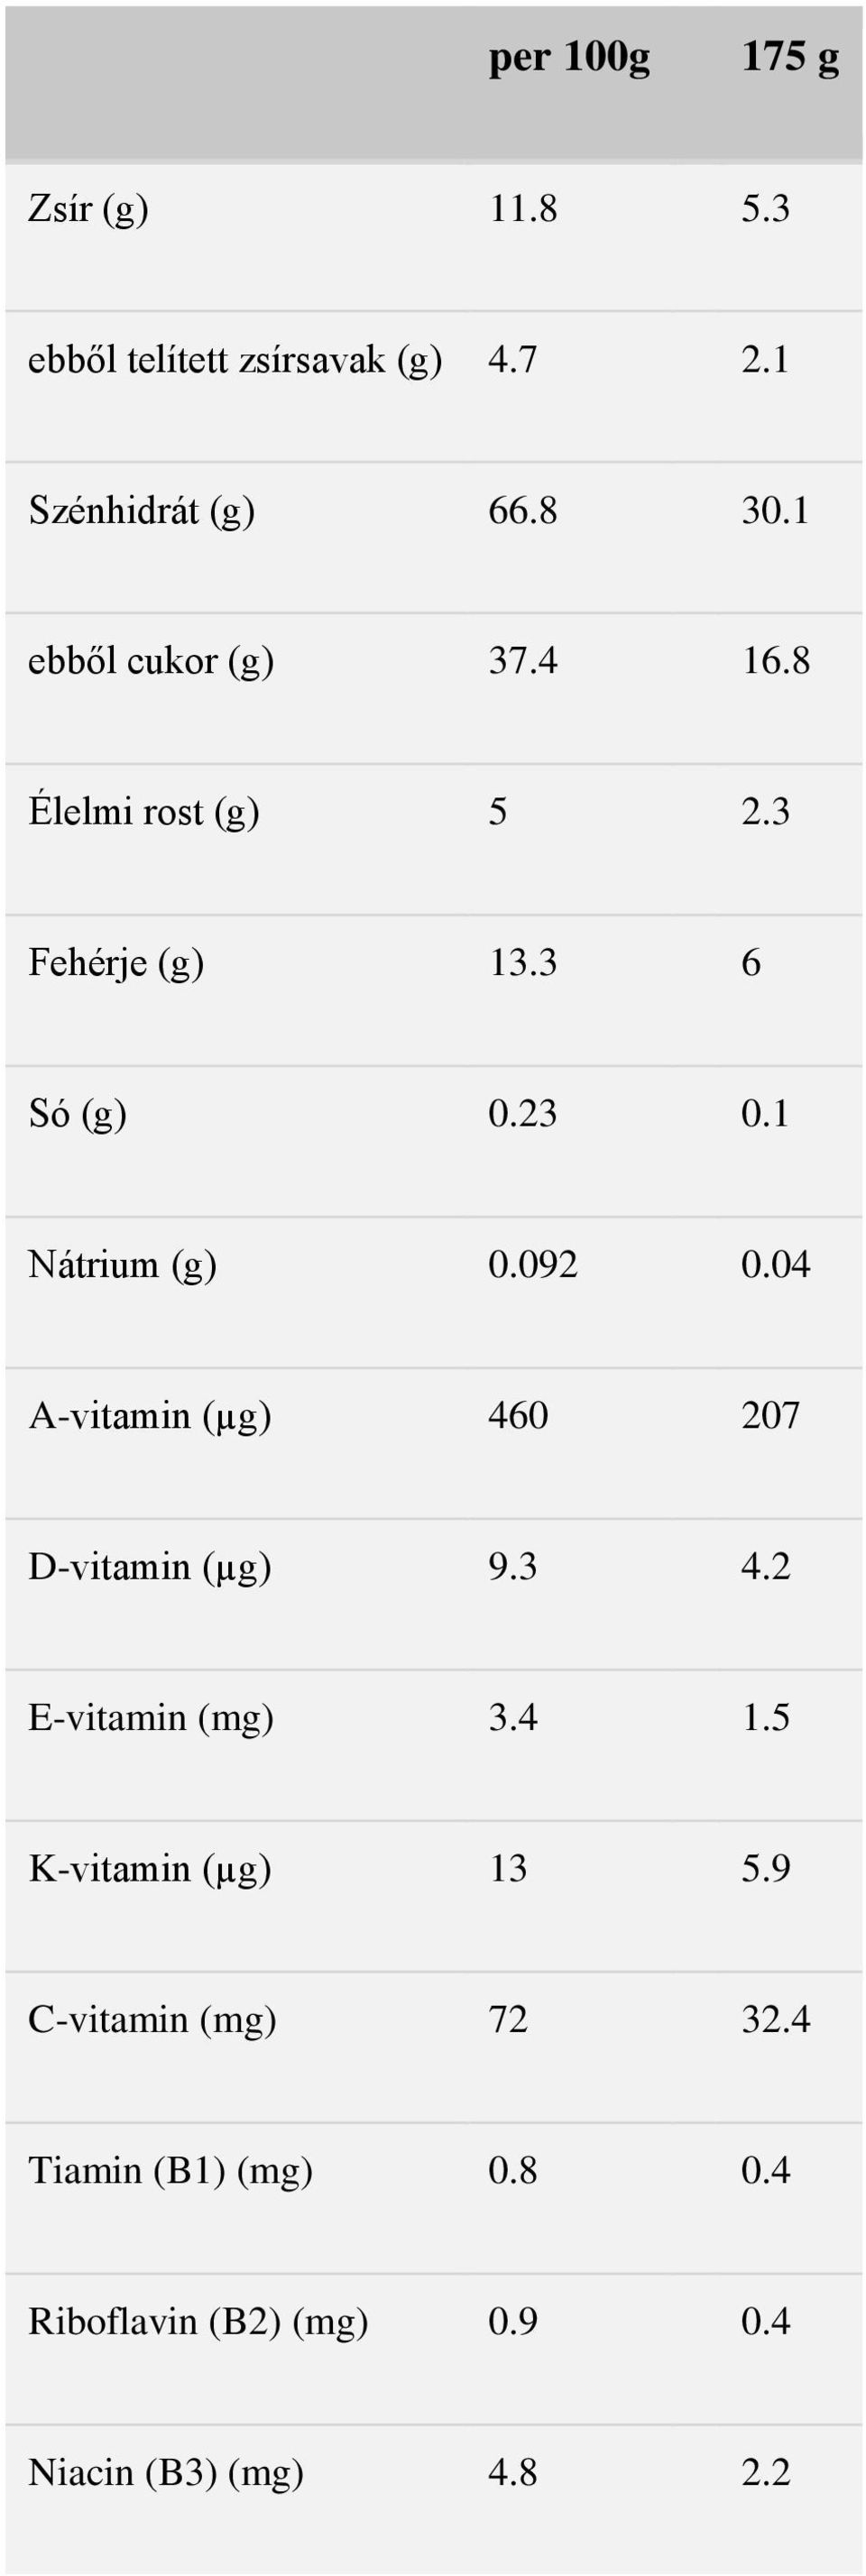 092 0.04 A-vitamin (µg) 460 207 D-vitamin (µg) 9.3 4.2 E-vitamin (mg) 3.4 1.5 K-vitamin (µg) 13 5.